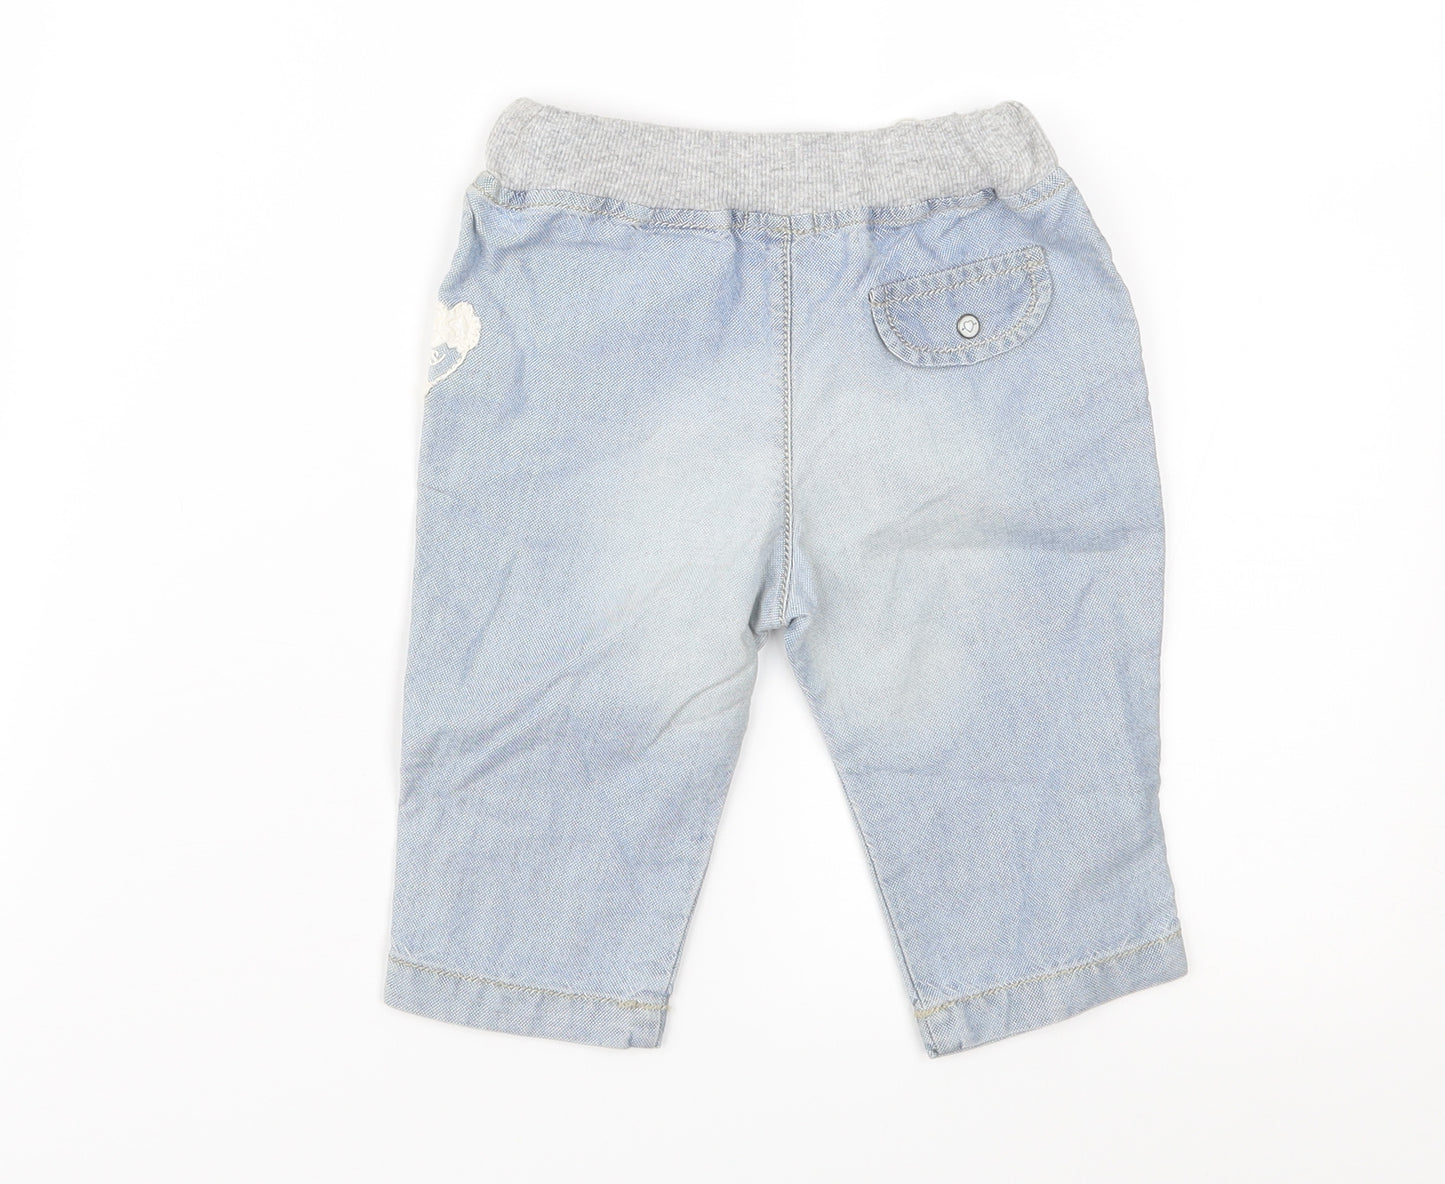 IKKS Baby Blue  Denim Cargo Jeans Size 3-6 Months